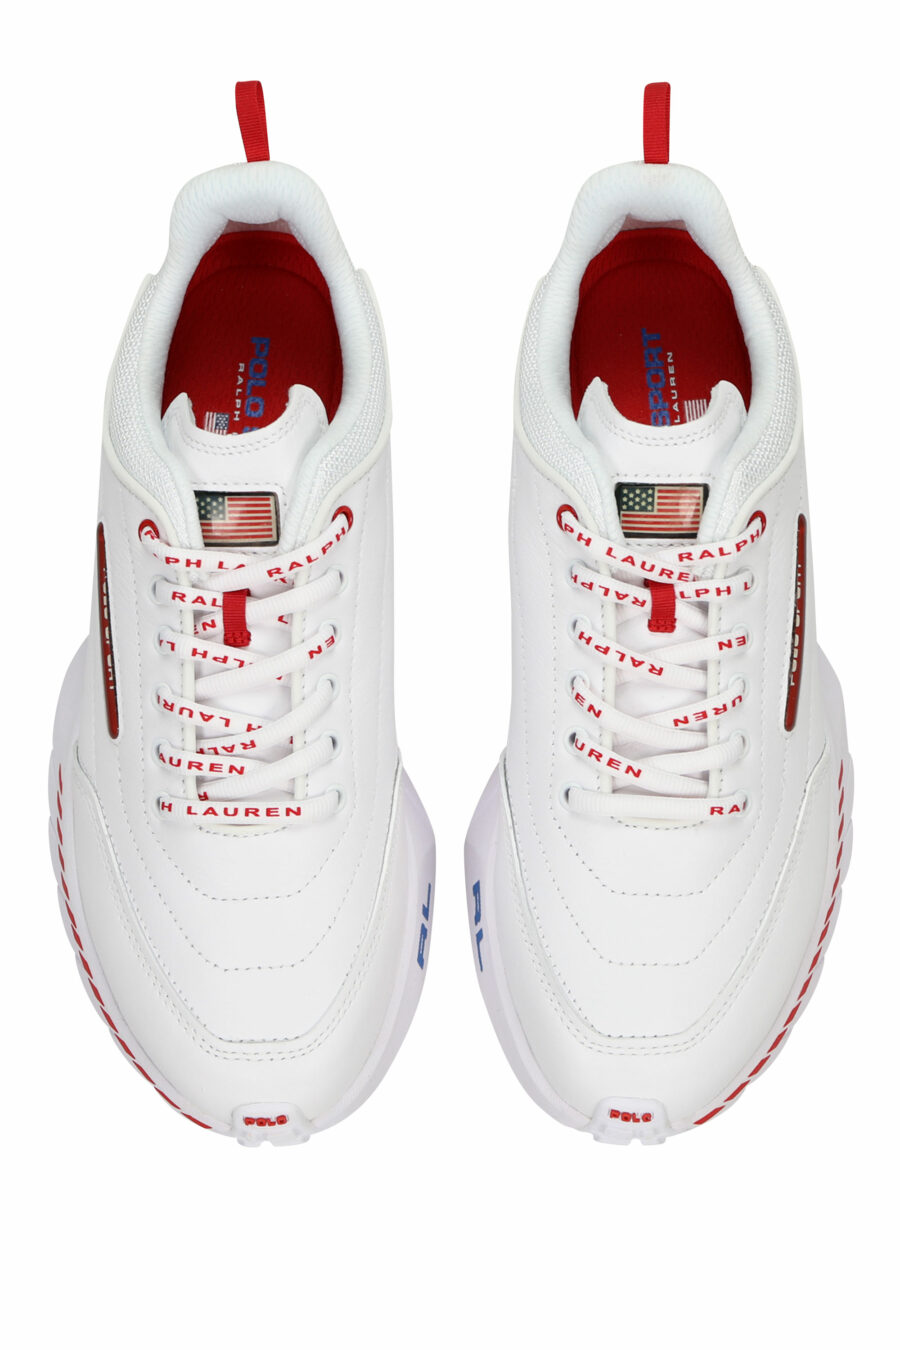 Weiße Turnschuhe mit Mini-Logo und roten Details - 3616535649279 4